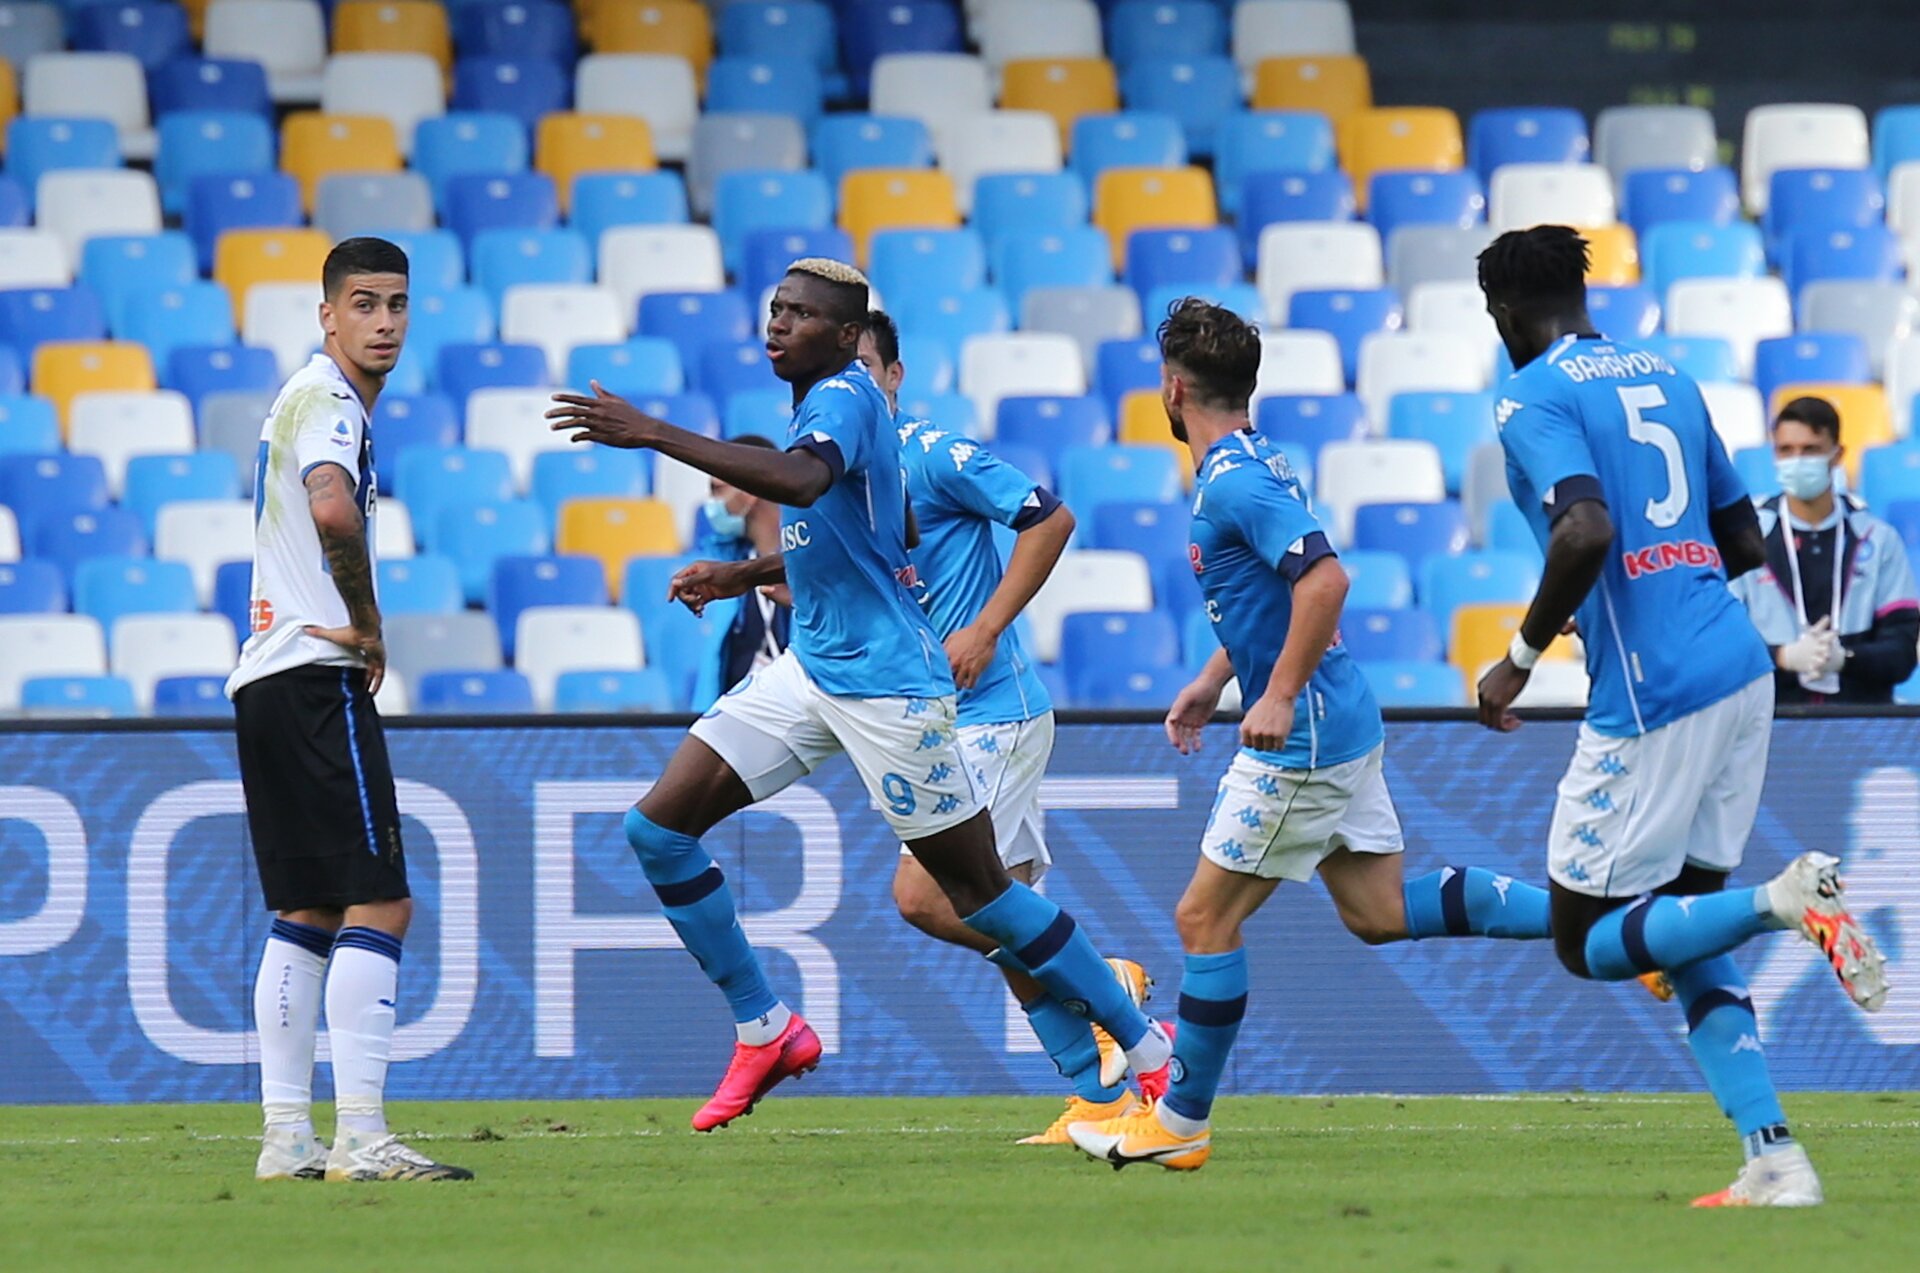 Serie A, Juve fermata a Crotone. Il Napoli travolge l’Atalanta, Samp-Lazio 3-0